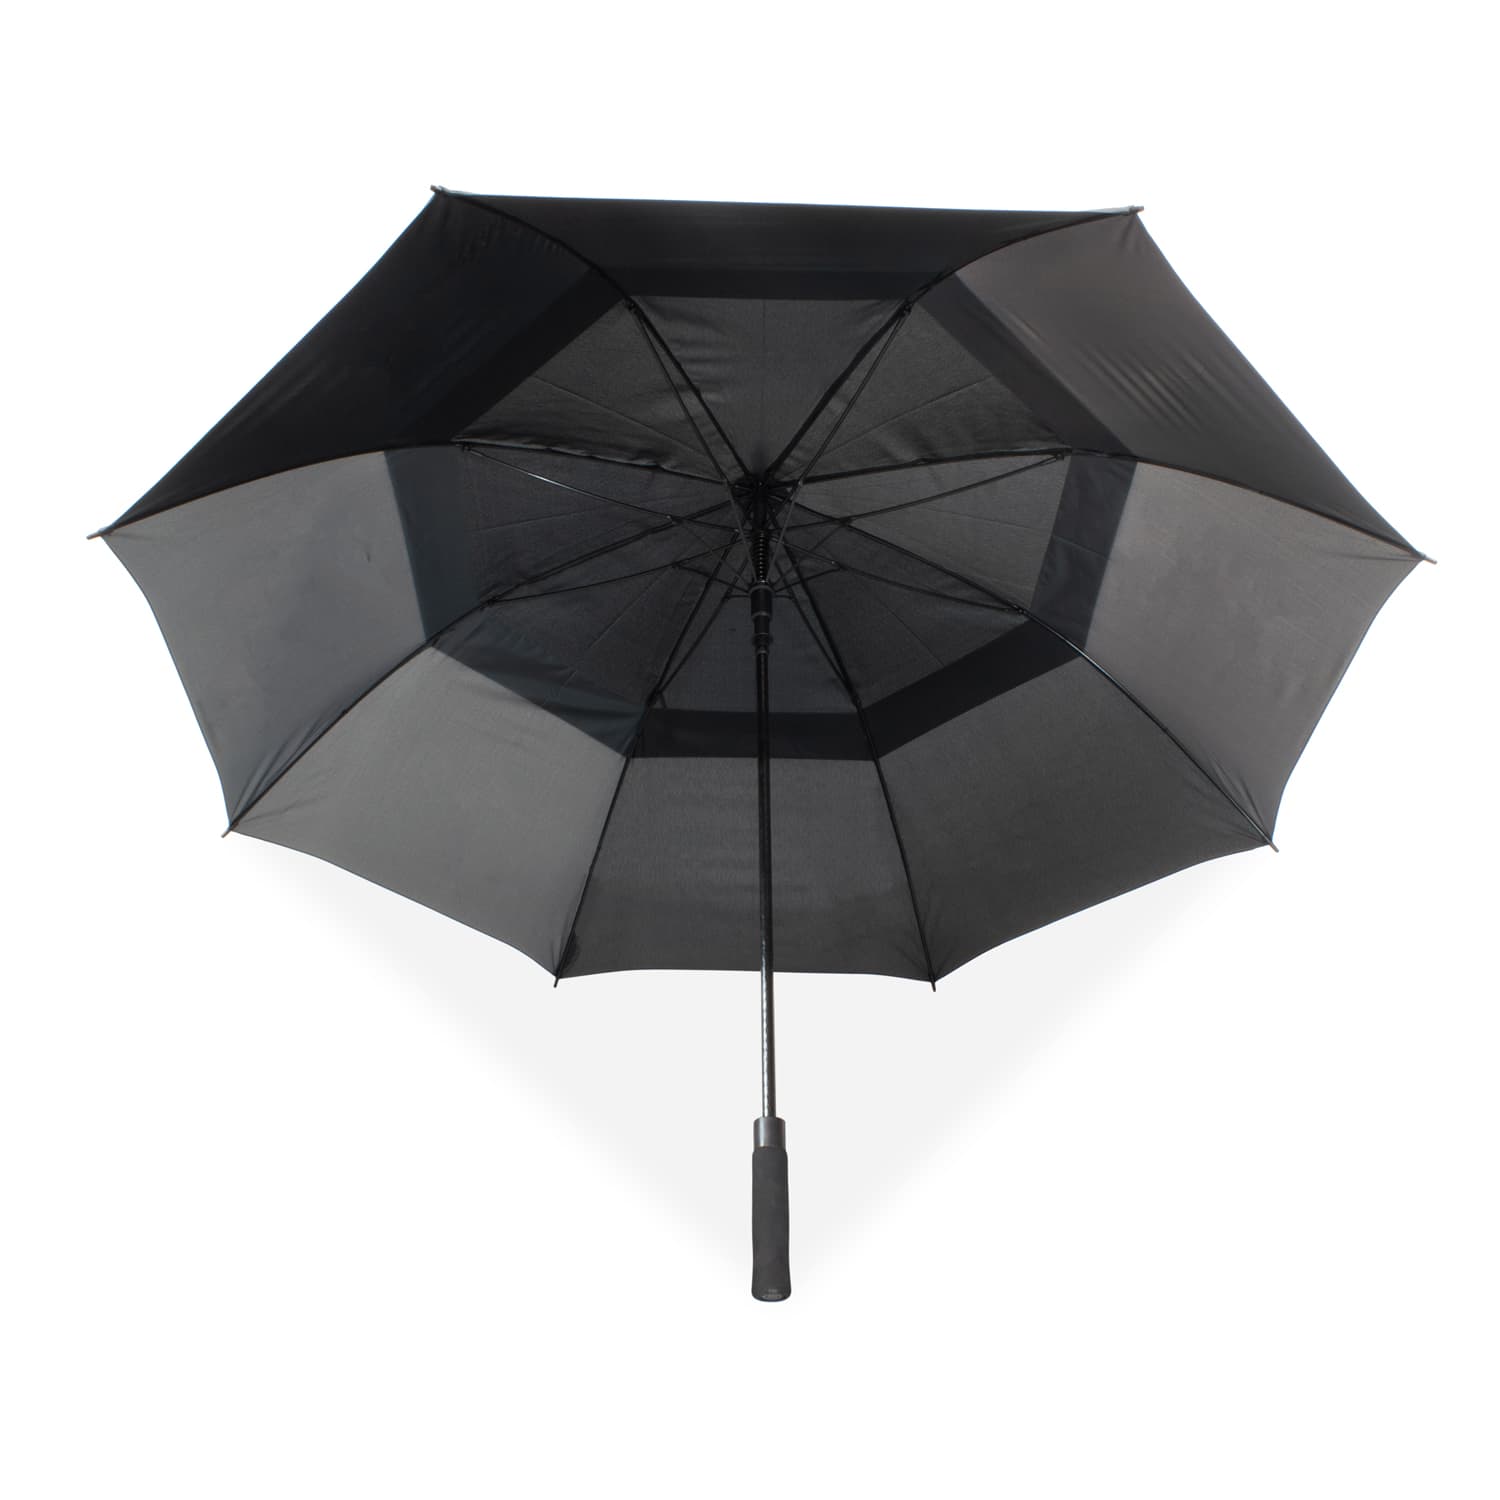 Storm proof golf umbrella